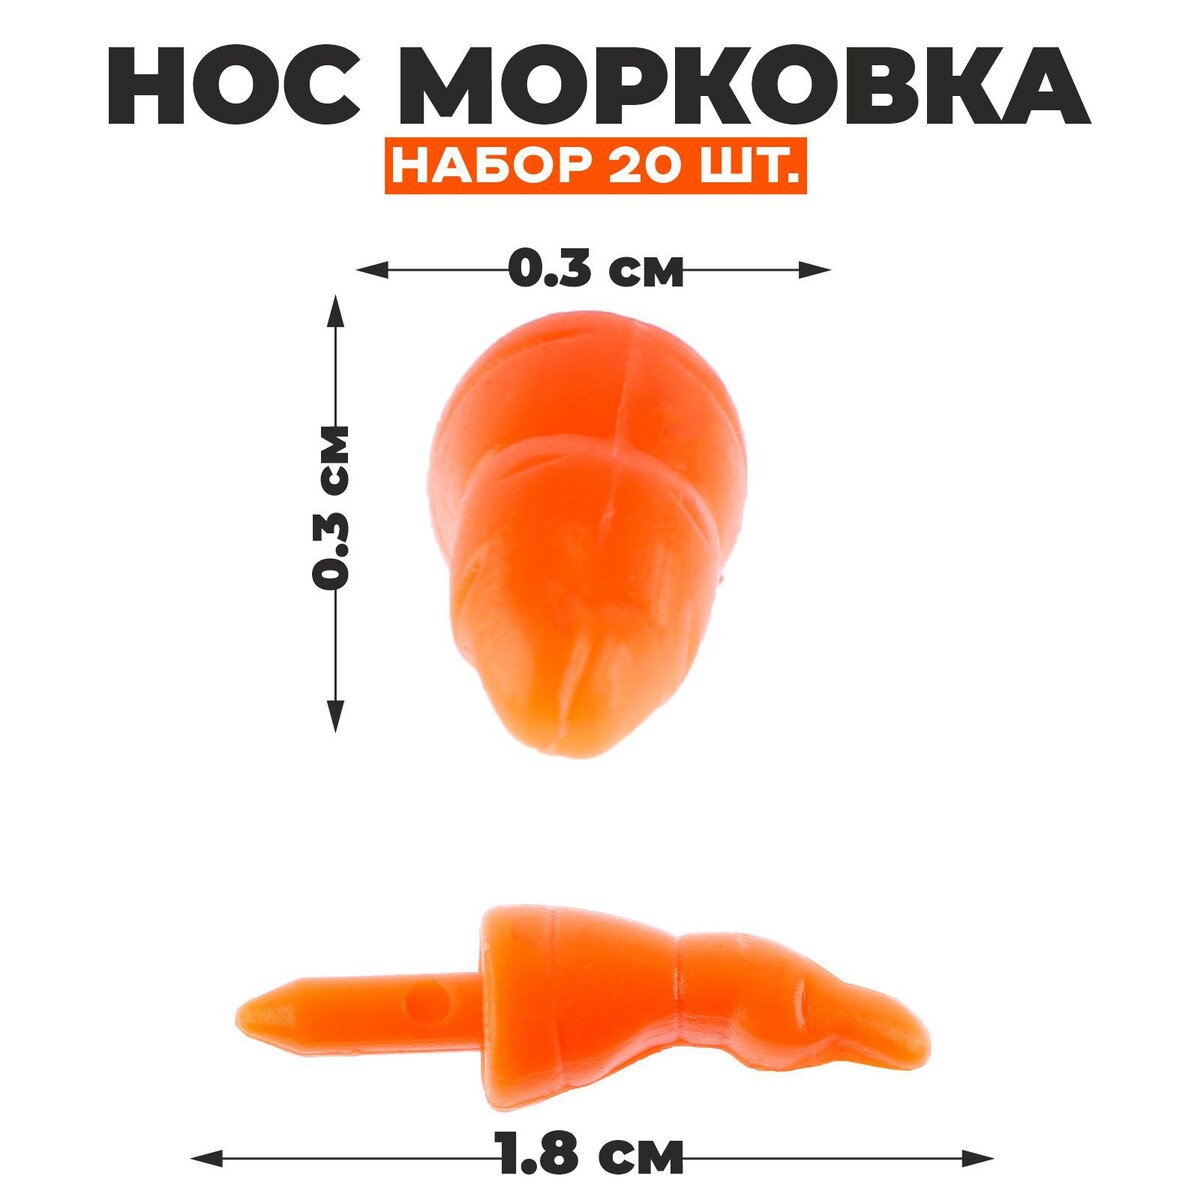 Нос - морковка, набор 20 шт., размер 1 шт. — 1,8 × 0,3 × 0,3 см нос морковка набор 20 шт размер 1 шт 1 8 × 0 3 × 0 3 см